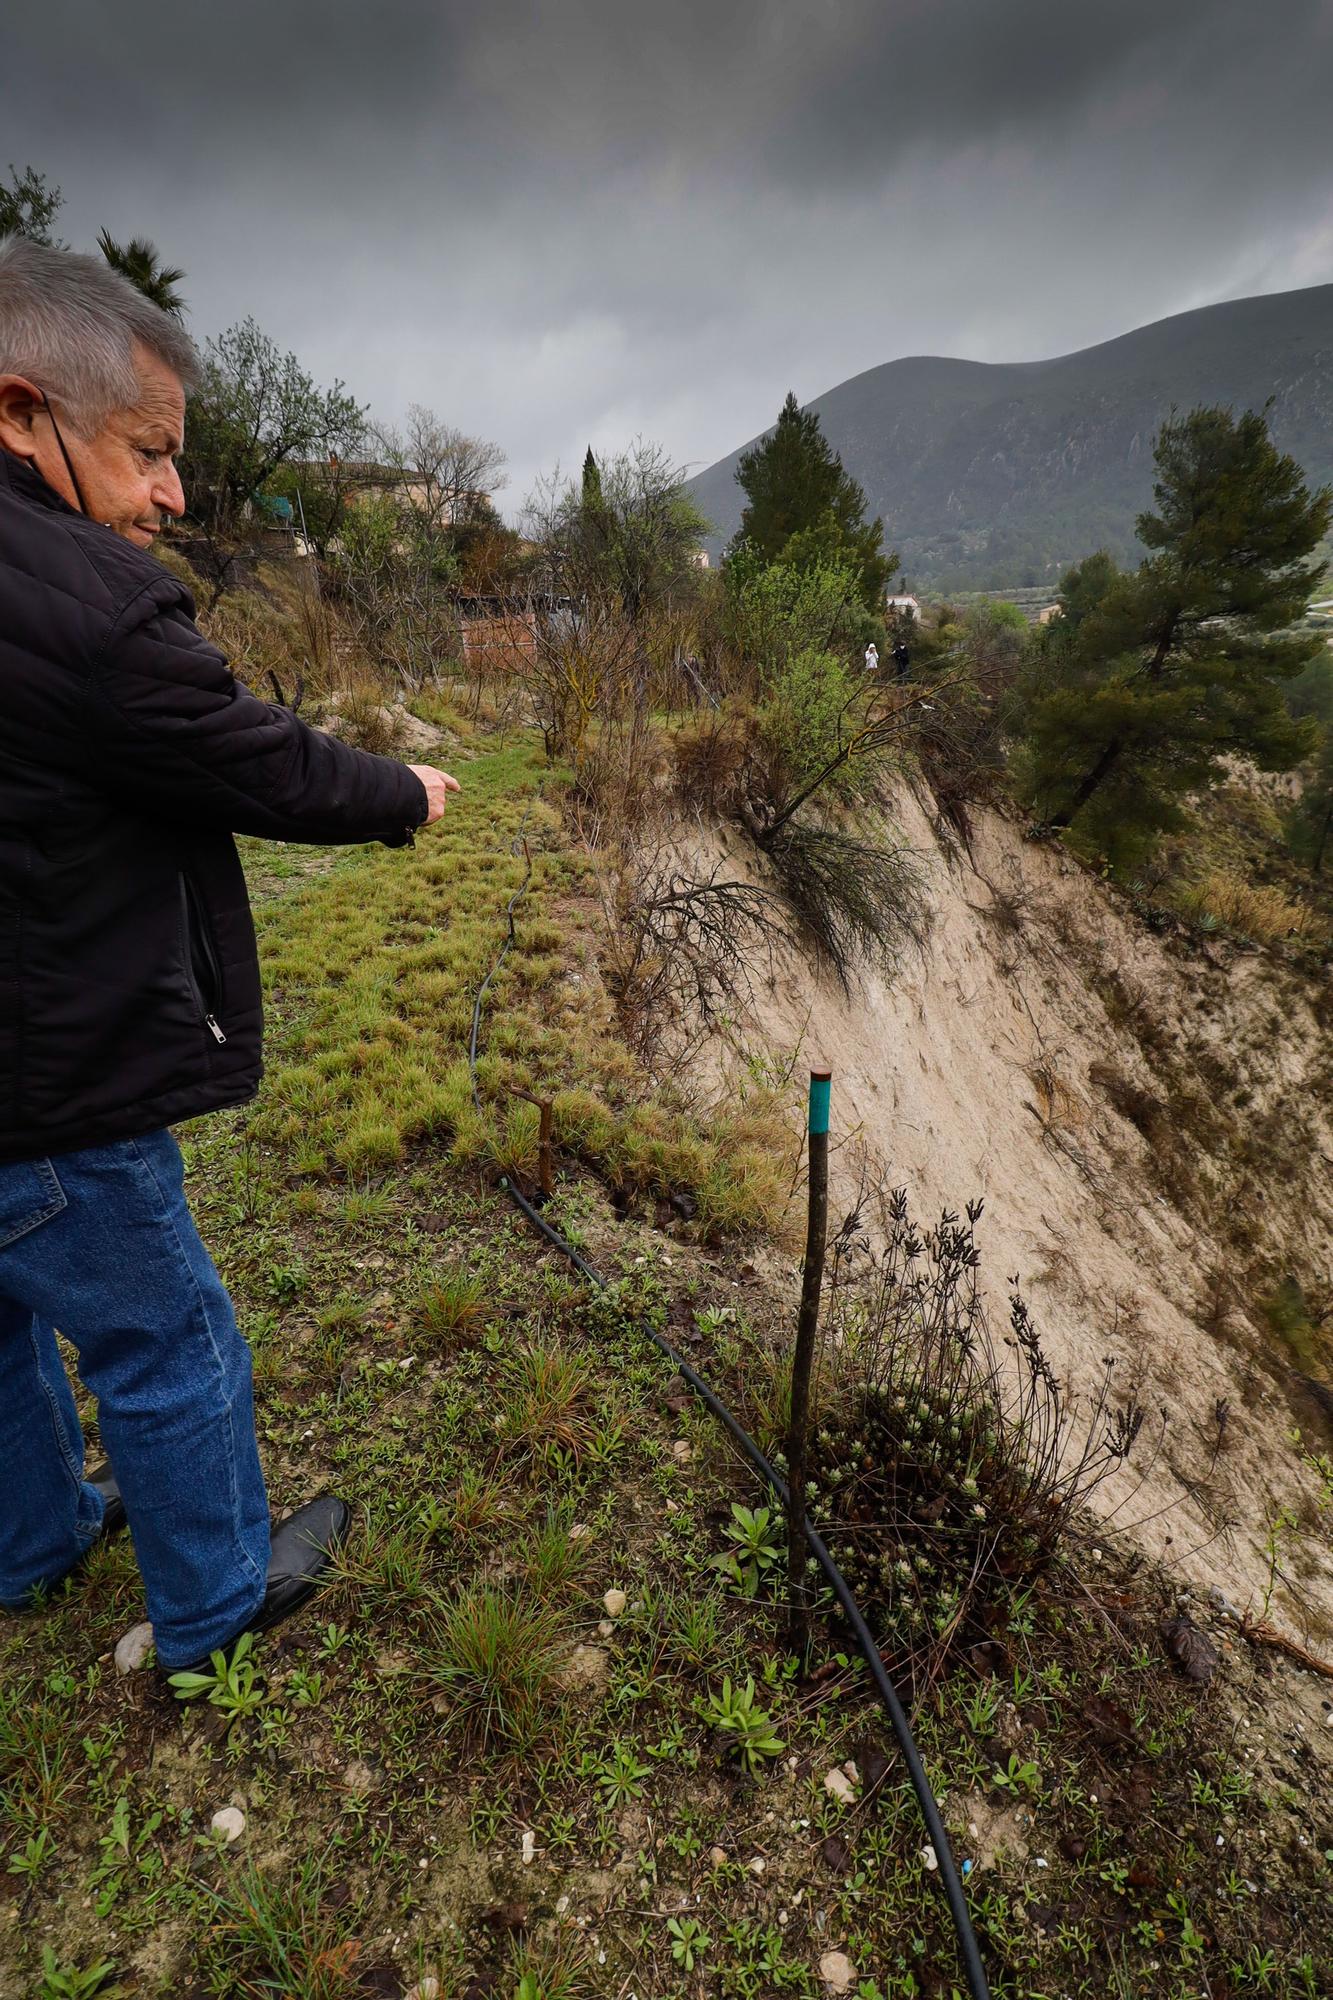 Las lluvias agravan el riesgo de derrumbes en el barranco de Benillup